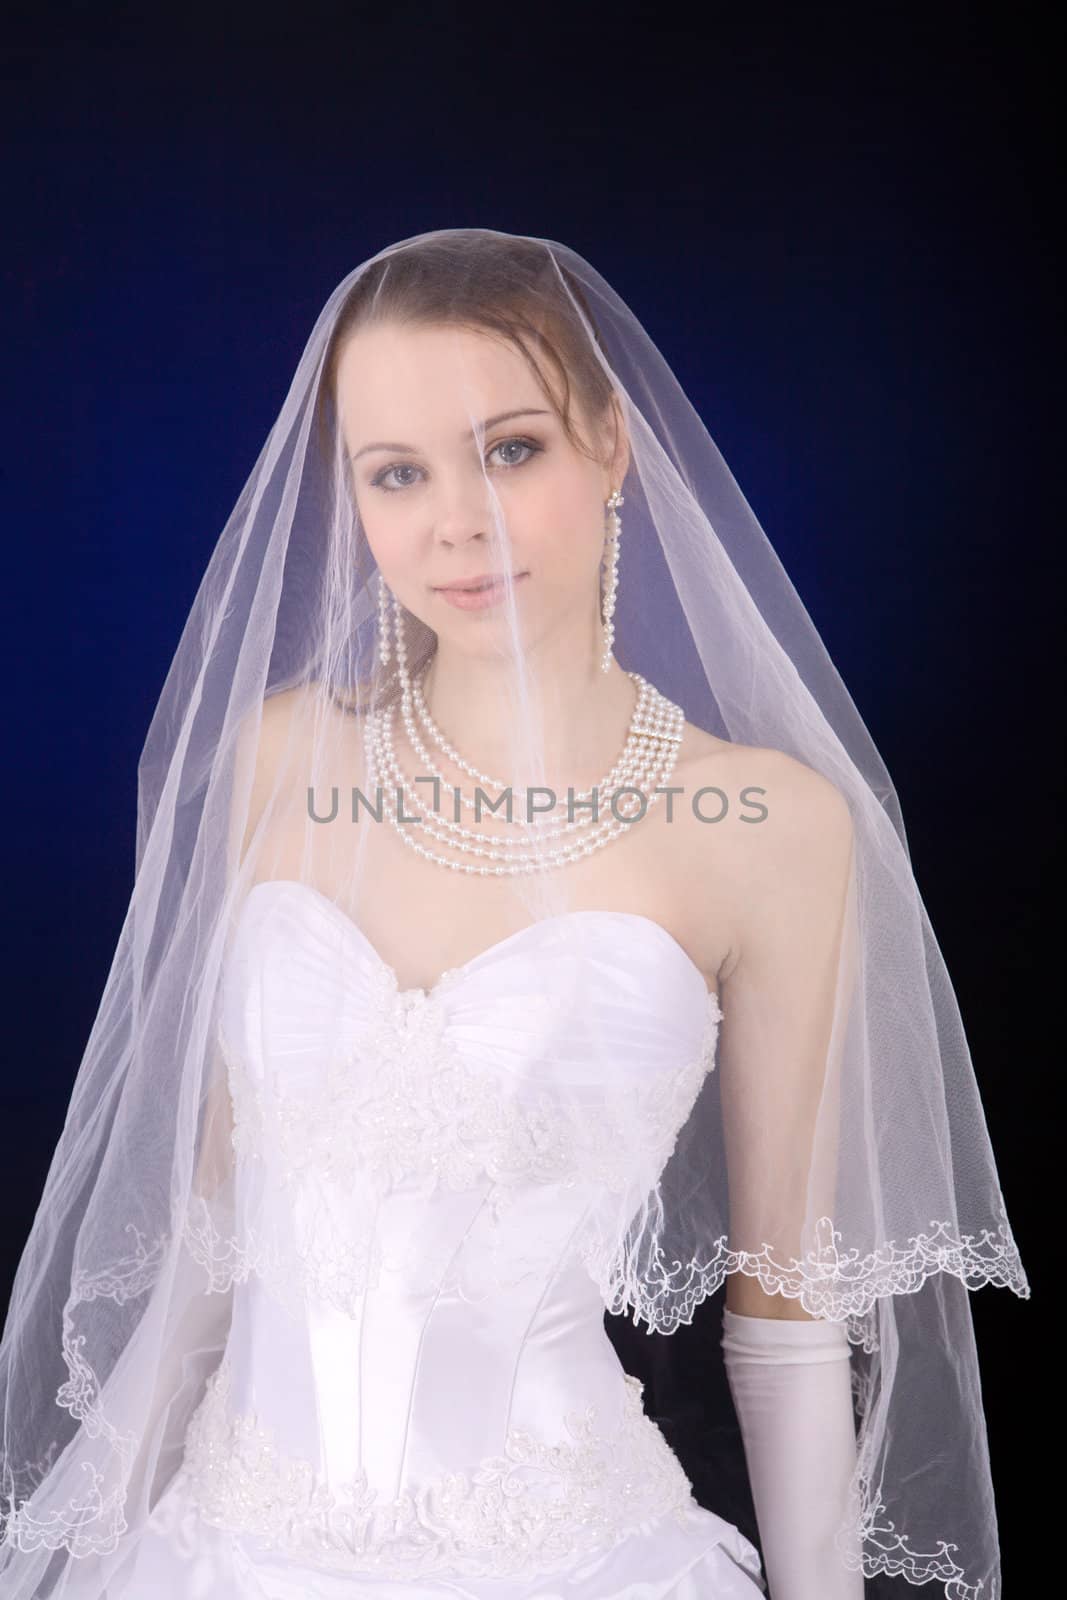 Bride with under veil over dark blue background